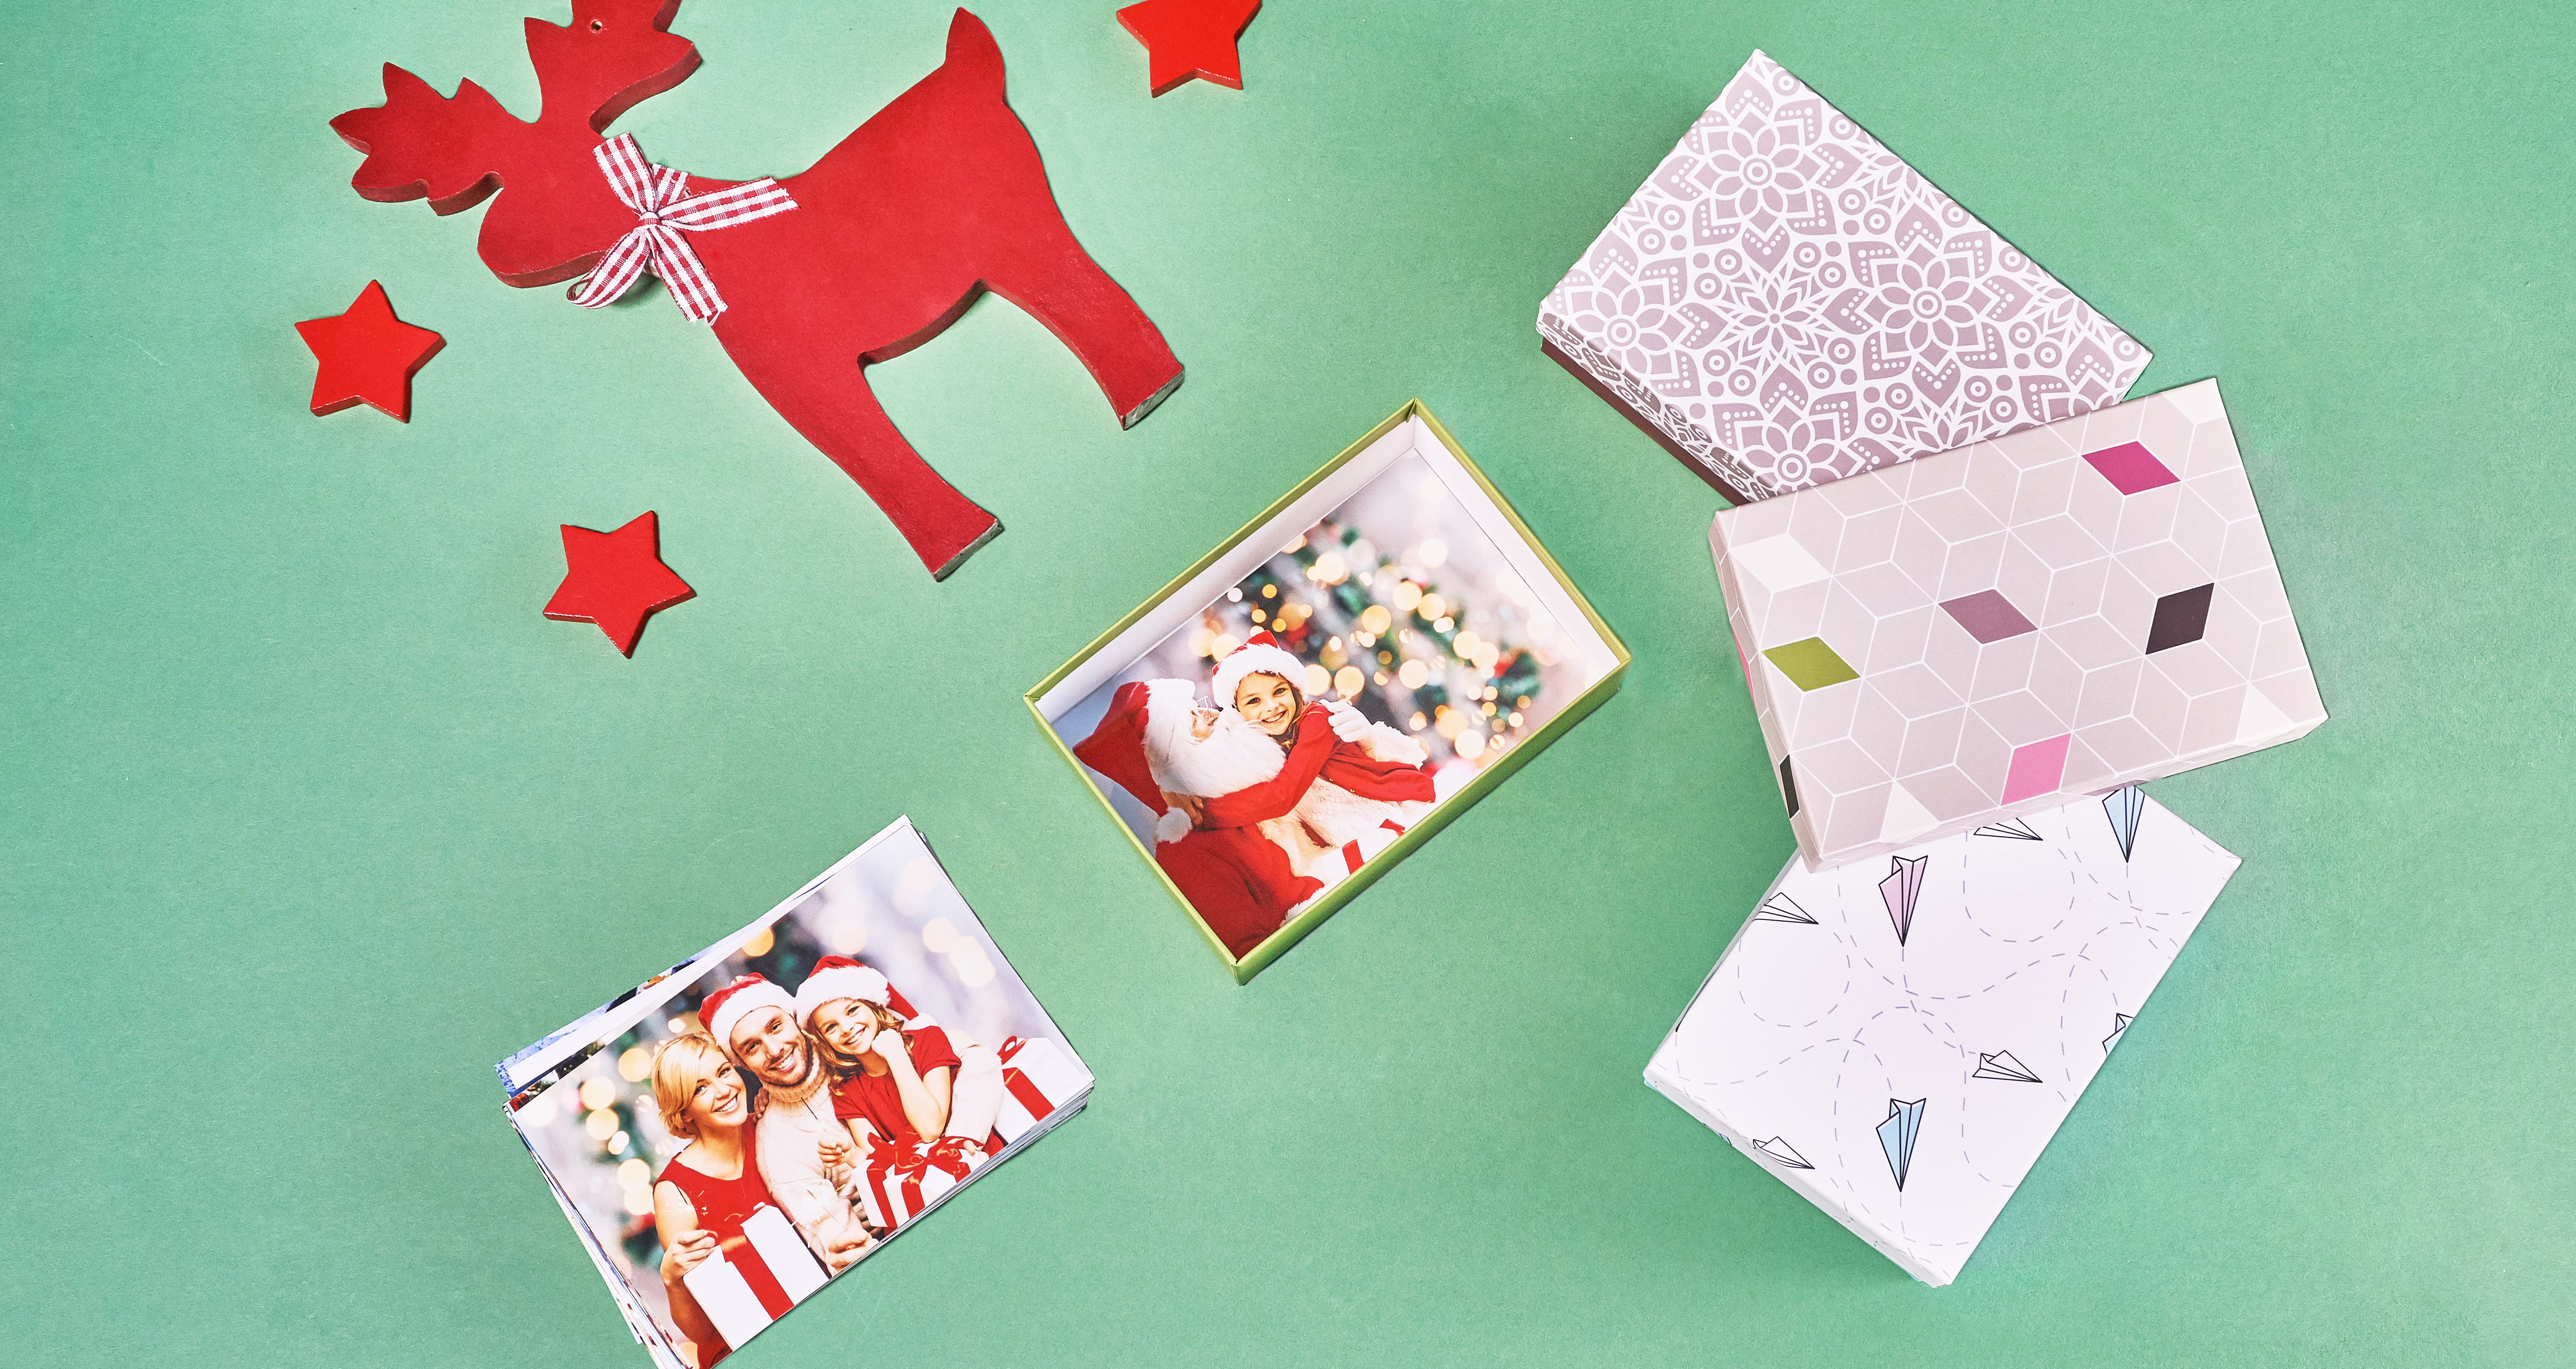 Les tirages classiques dans une boîte cadeau, à côté un tas de photos. À droite 3 emballages décoratifs pour les tirages, au dessus une renne rouge en bois et les étoiles. Tous les produits sur un fond vert.